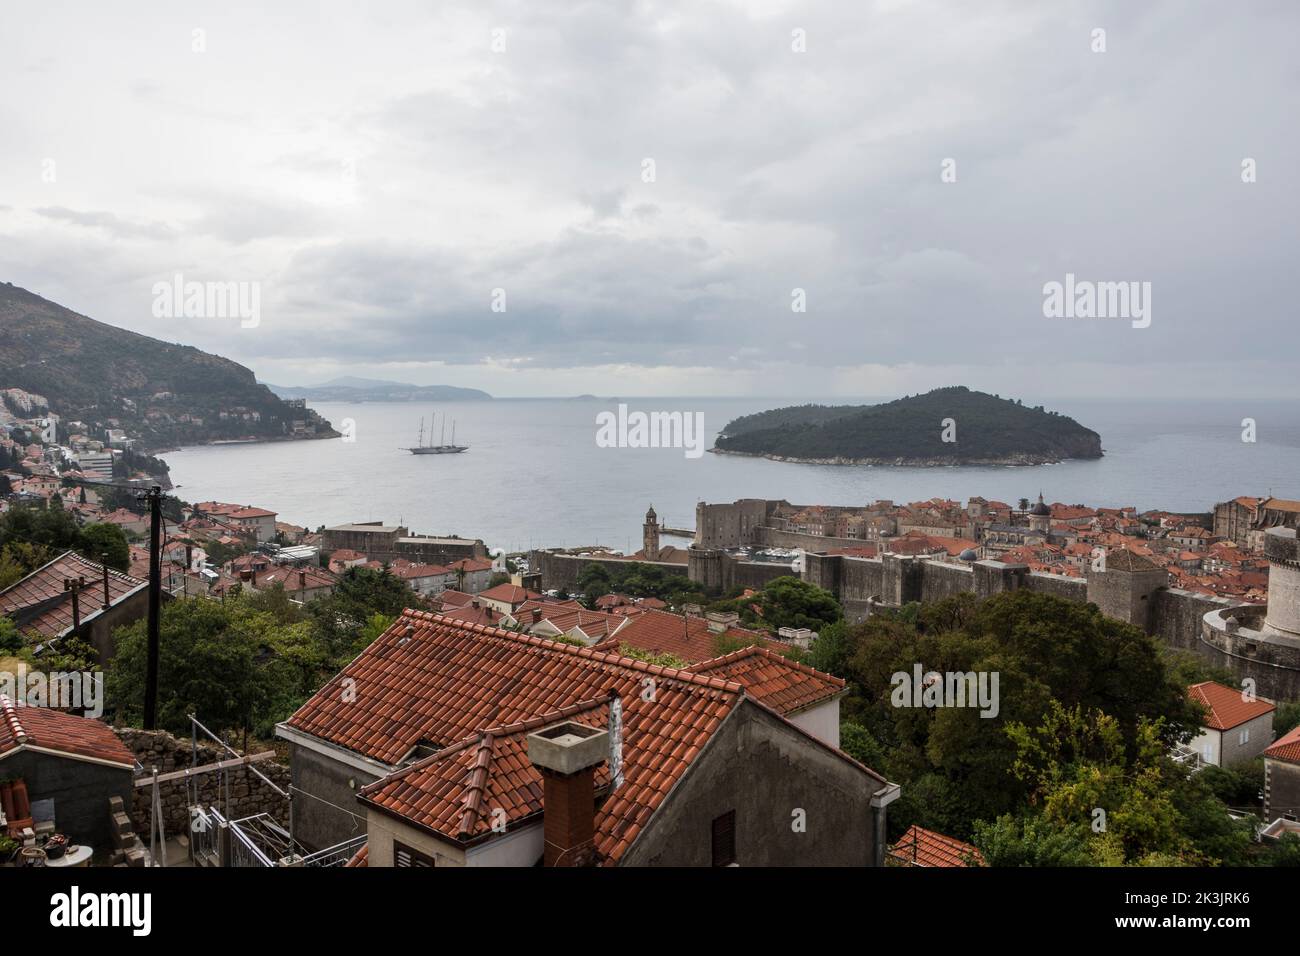 Vue d'ensemble de la vieille ville fortifiée de Dubrovnik, Croatie. Banque D'Images